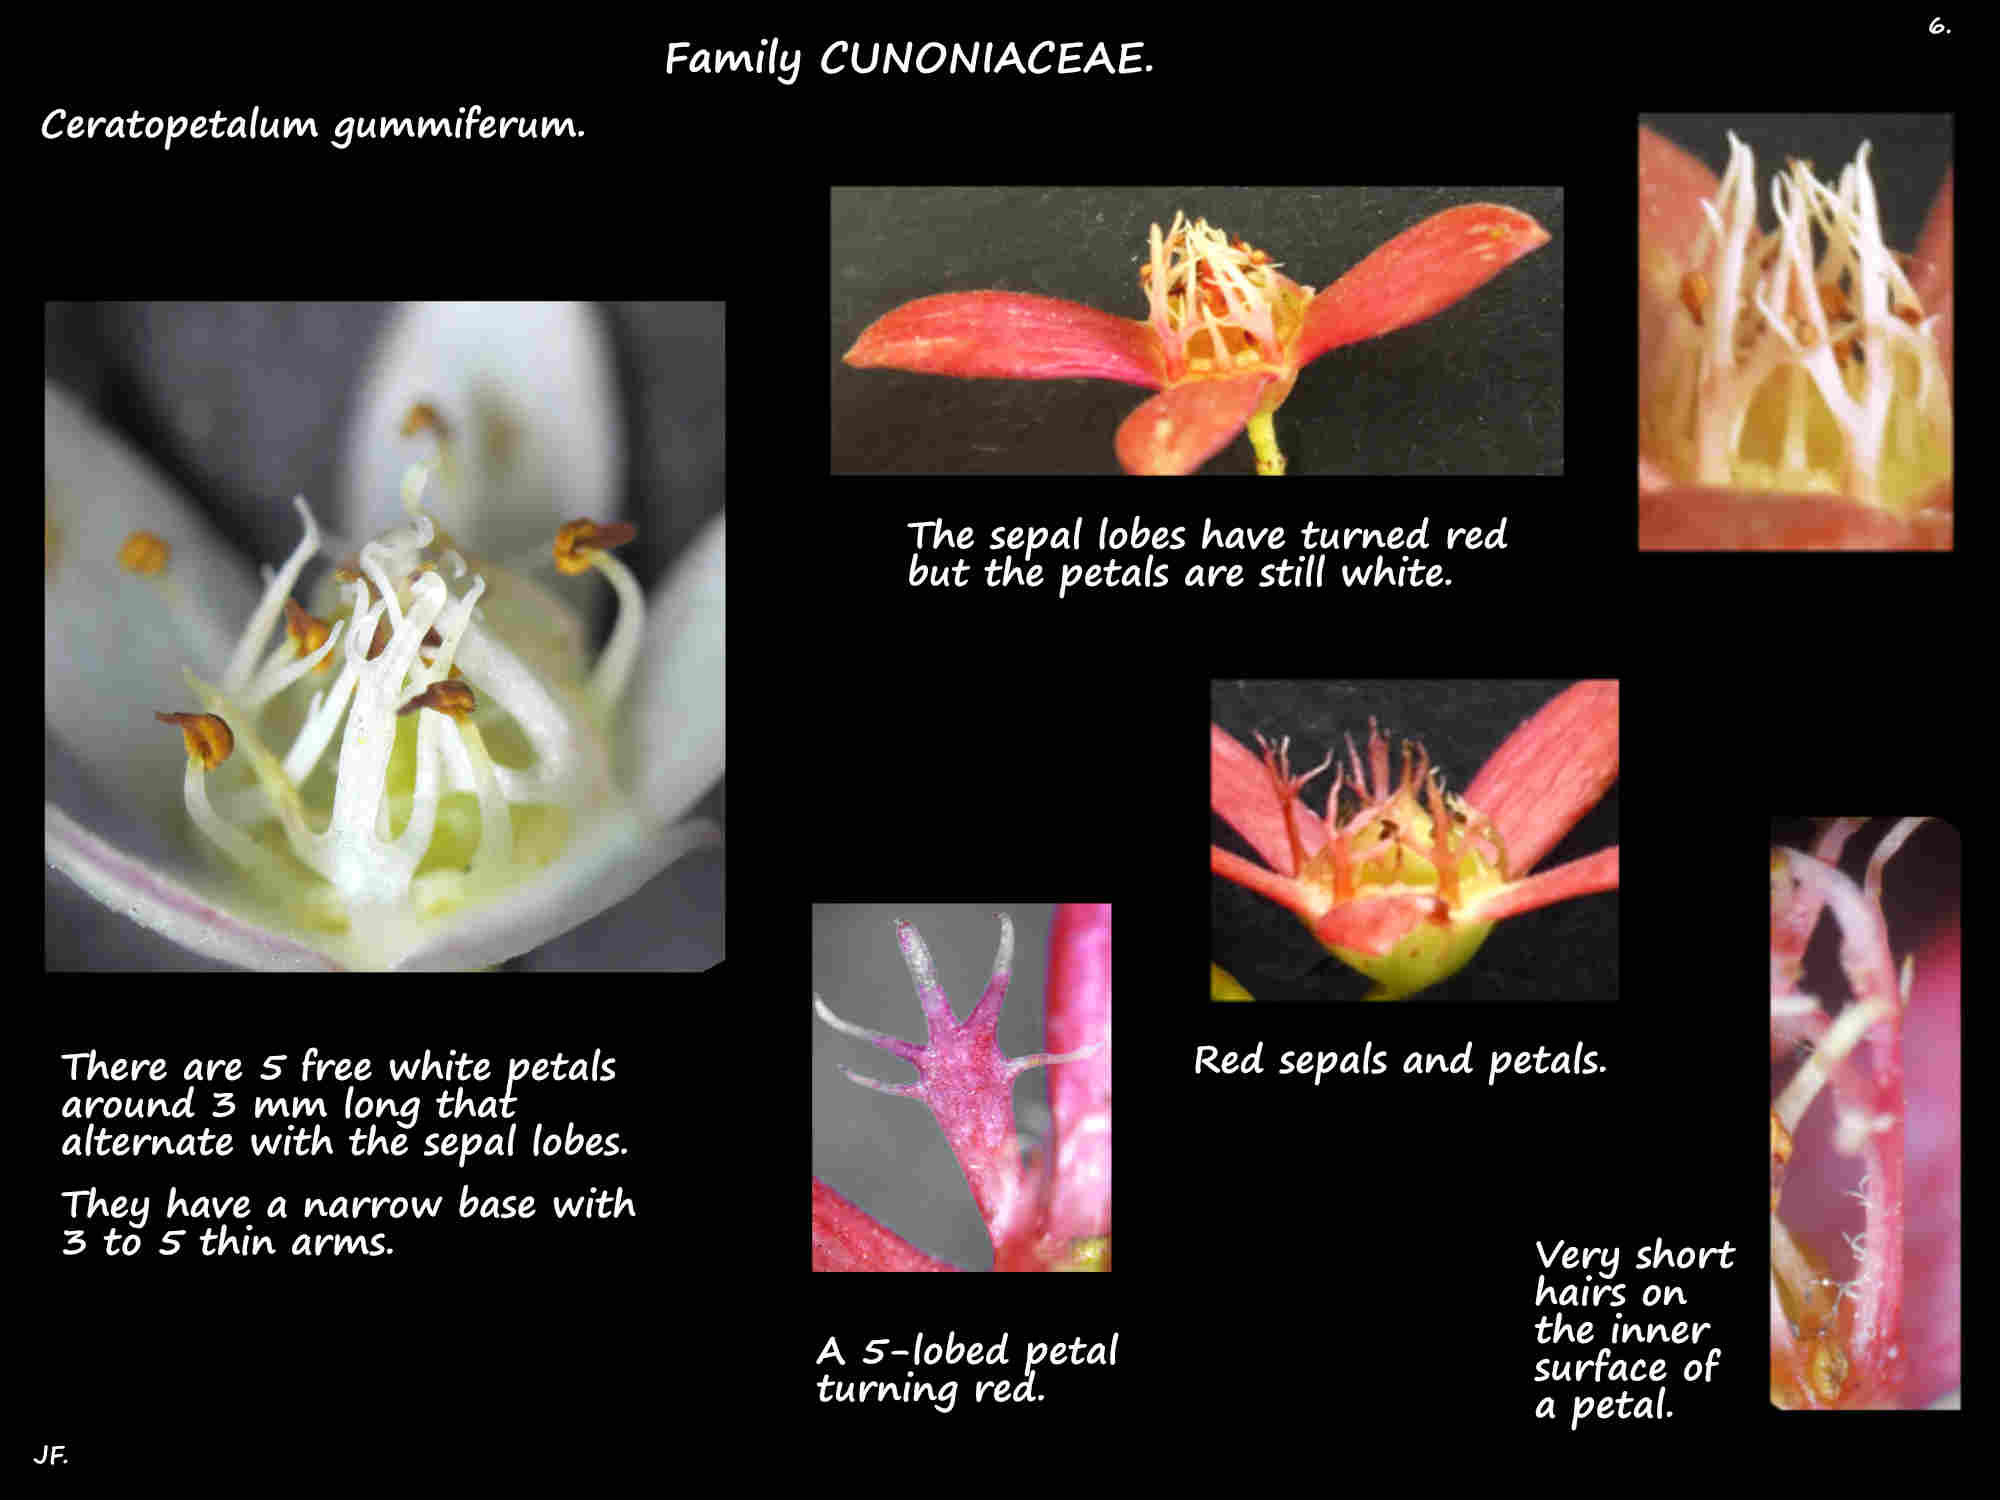 6 Lobed petals of Ceratopetalum gummiferum